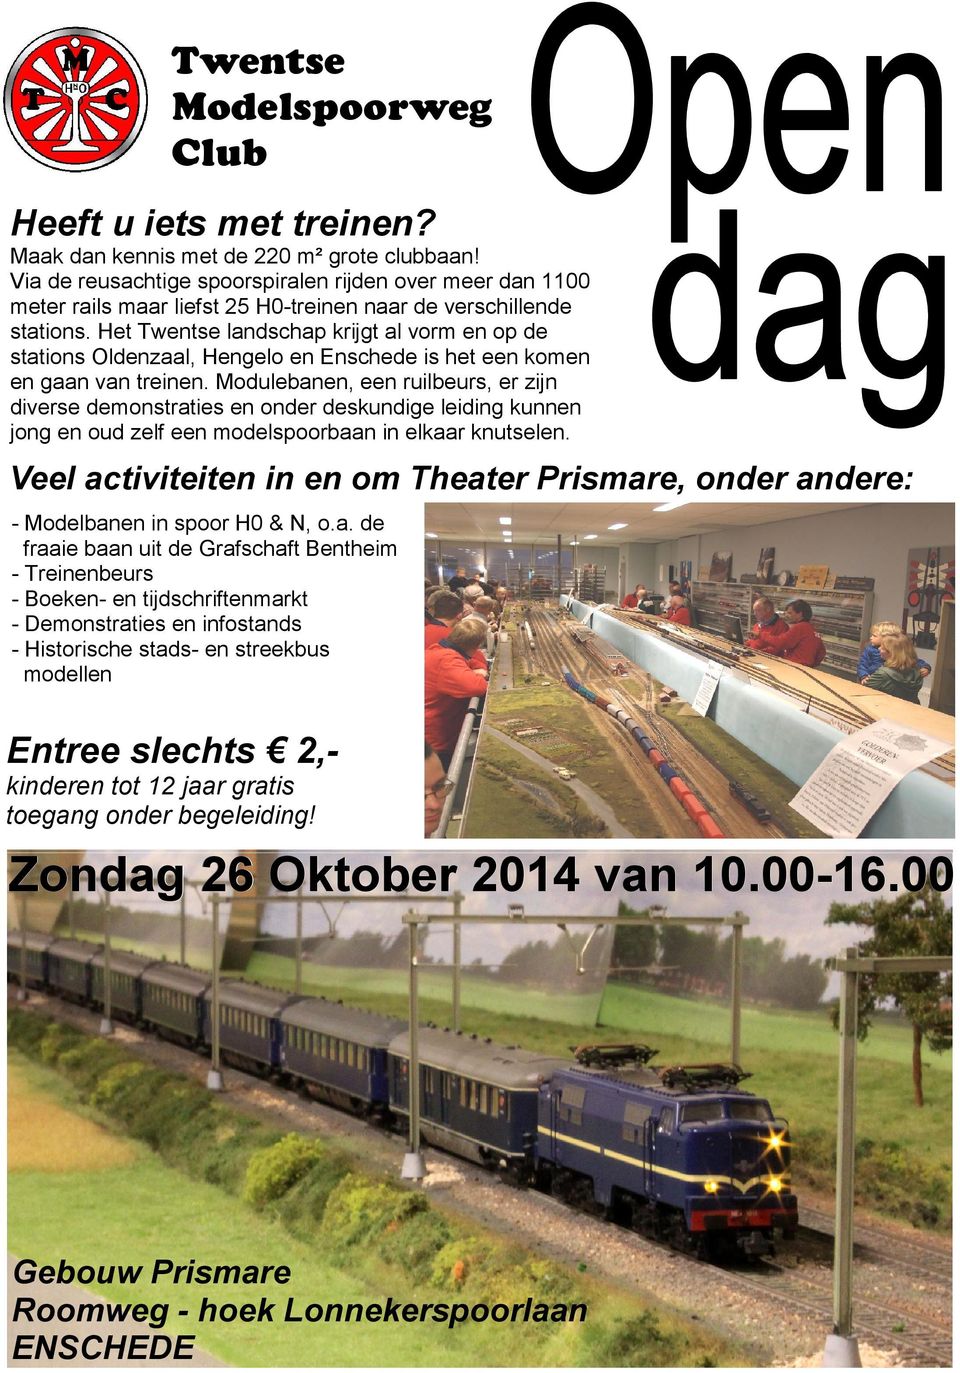 Het Twentse landschap krijgt al vorm en op de stations Oldenzaal, Hengelo en Enschede is het een komen en gaan van treinen.